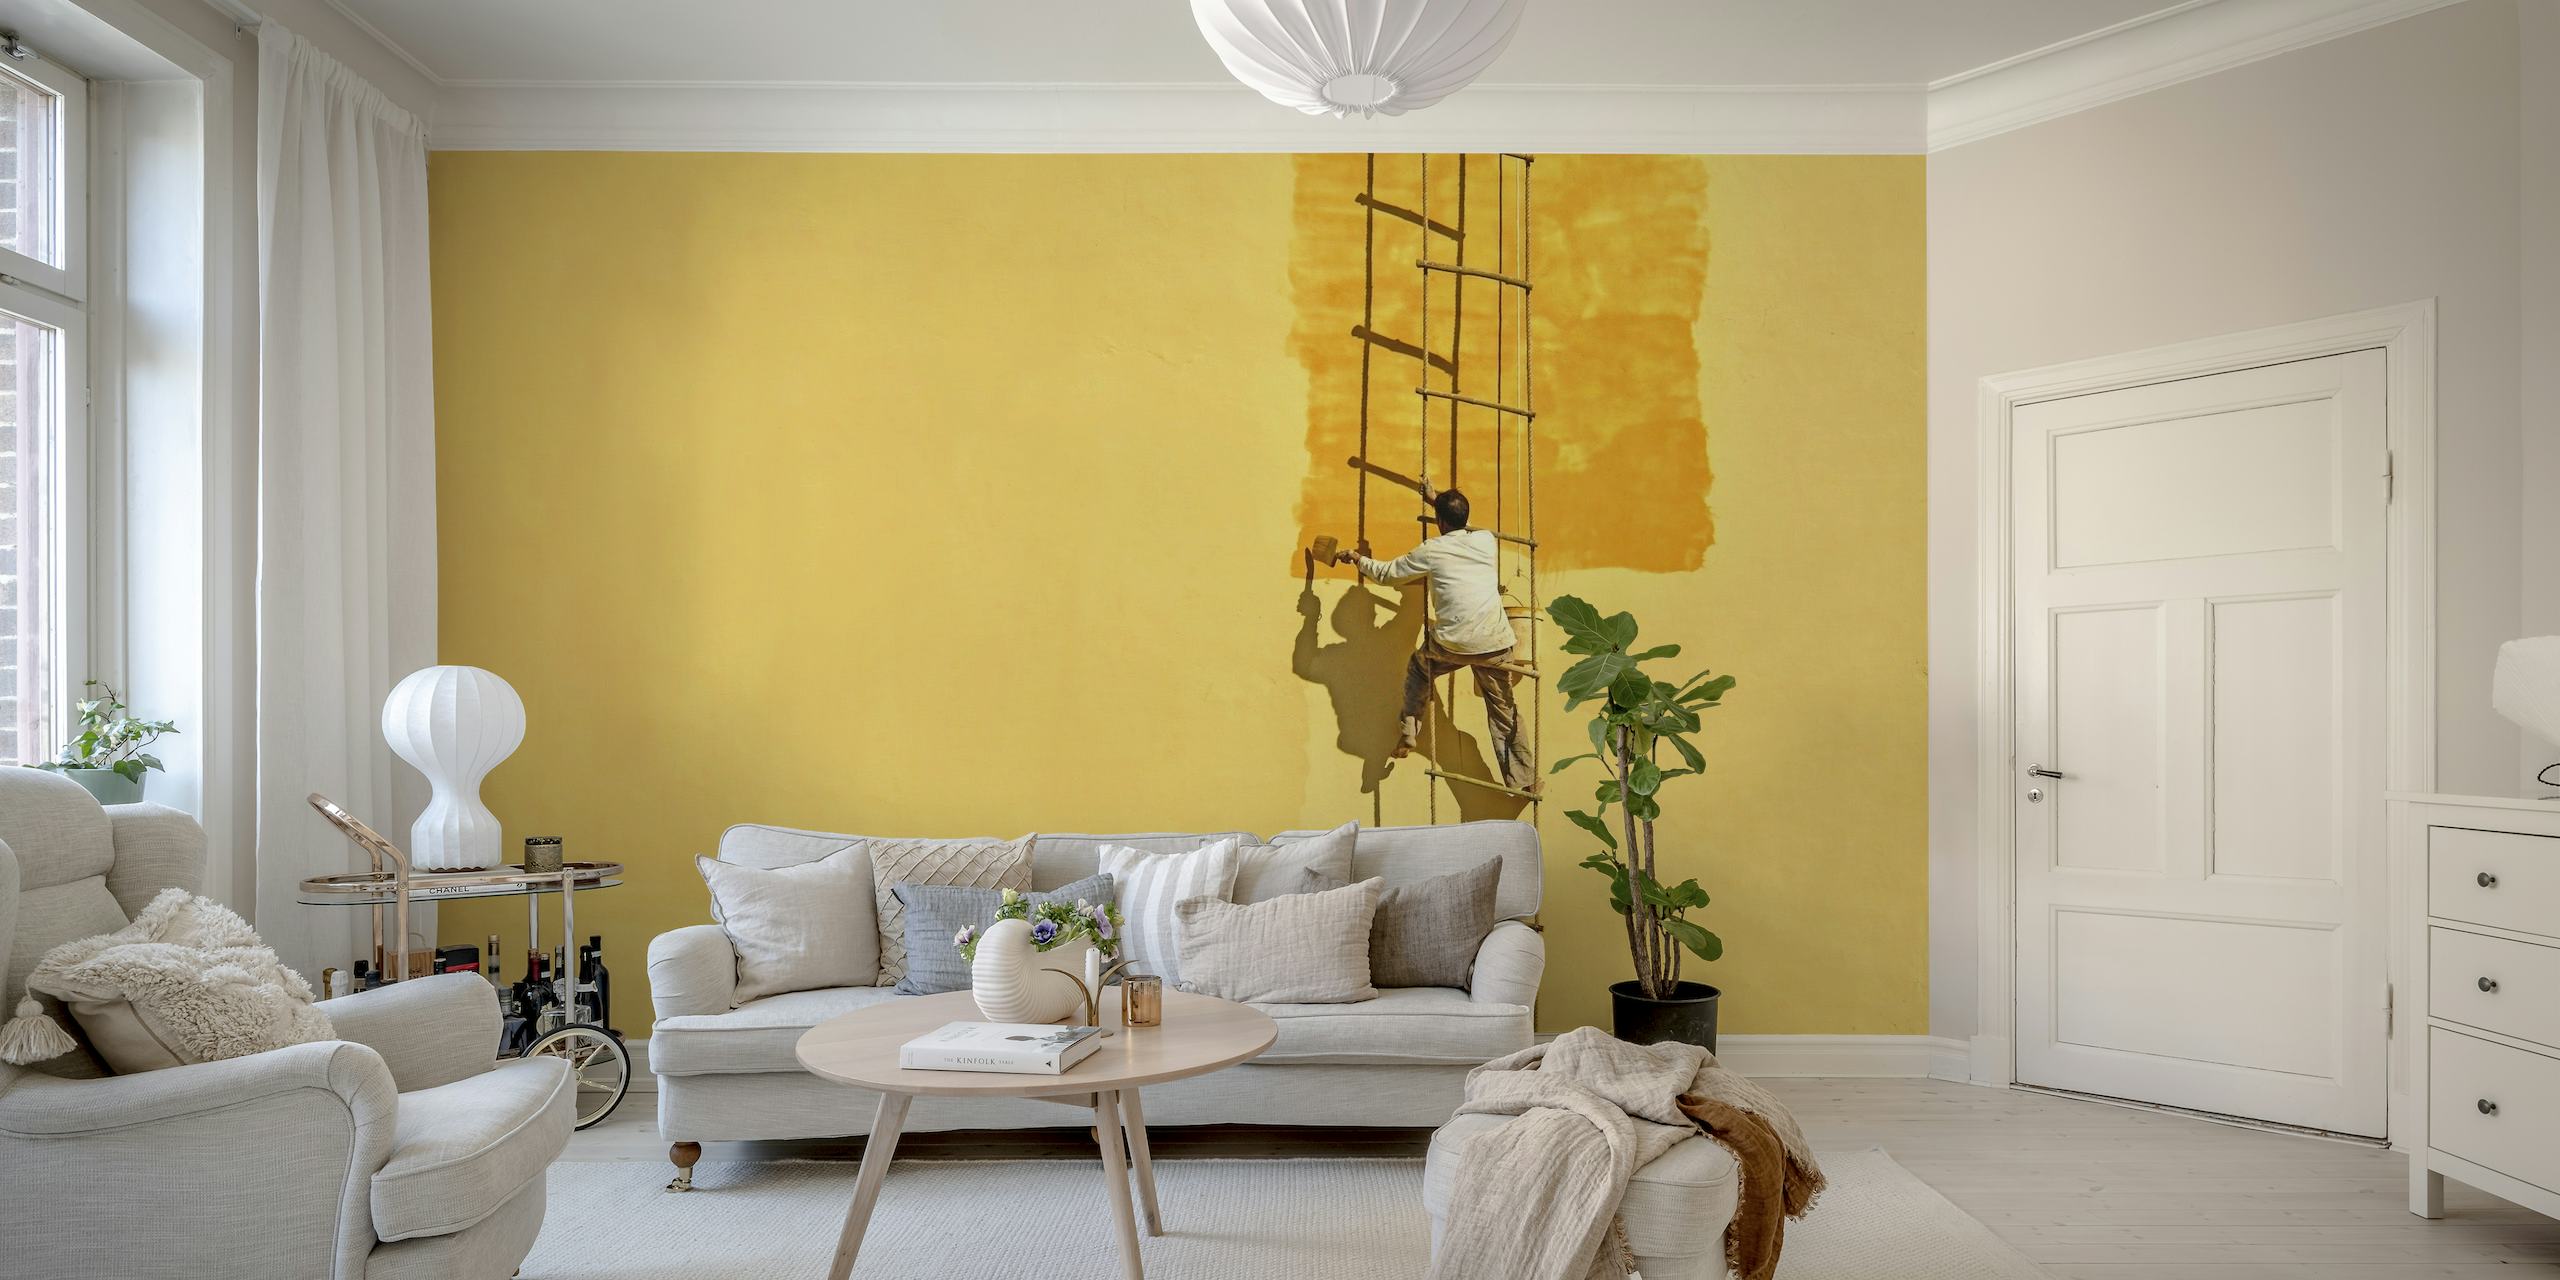 Silhouetted målare på stege mot gul väggmålning